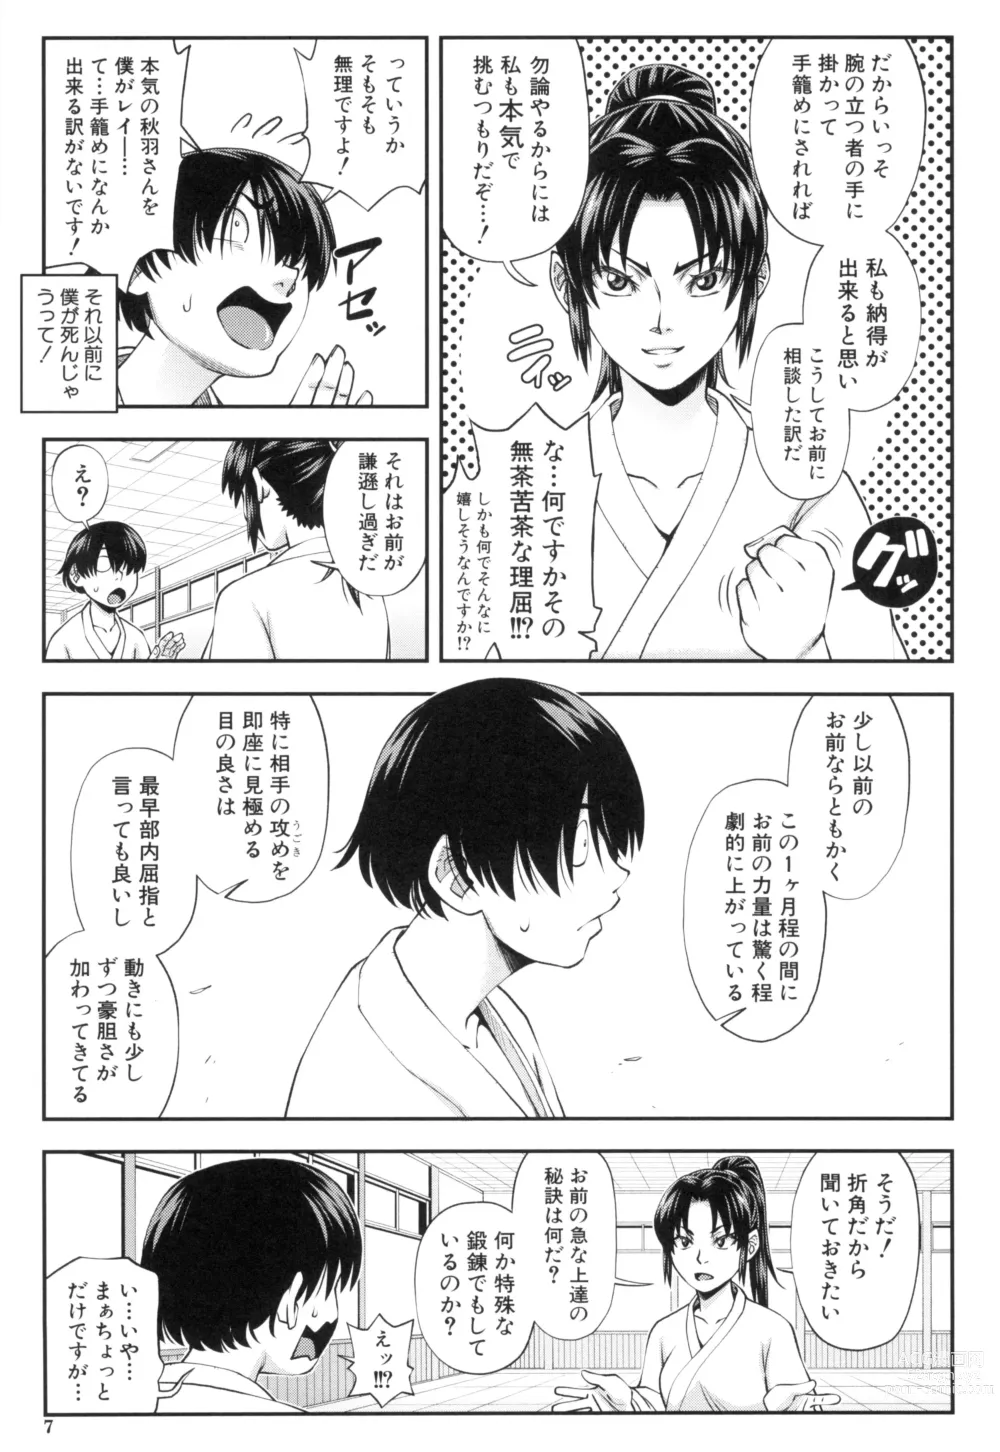 Page 7 of manga Yareba Yaru Hodo Suki ni Naru